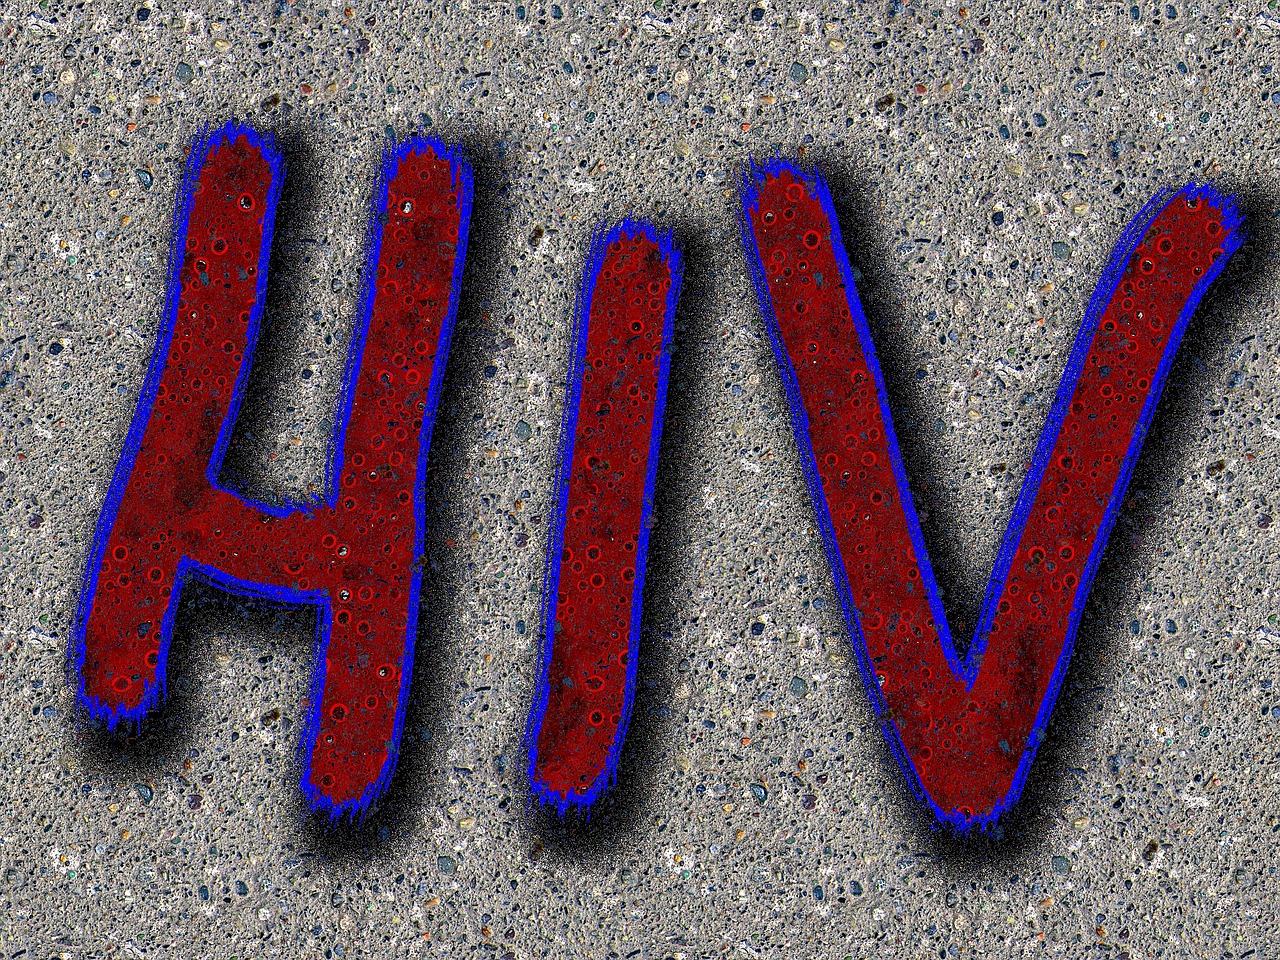 2022 HHS 艾滋病毒感染成人和青少年使用抗逆转录病毒药物指南（9月1日更新）